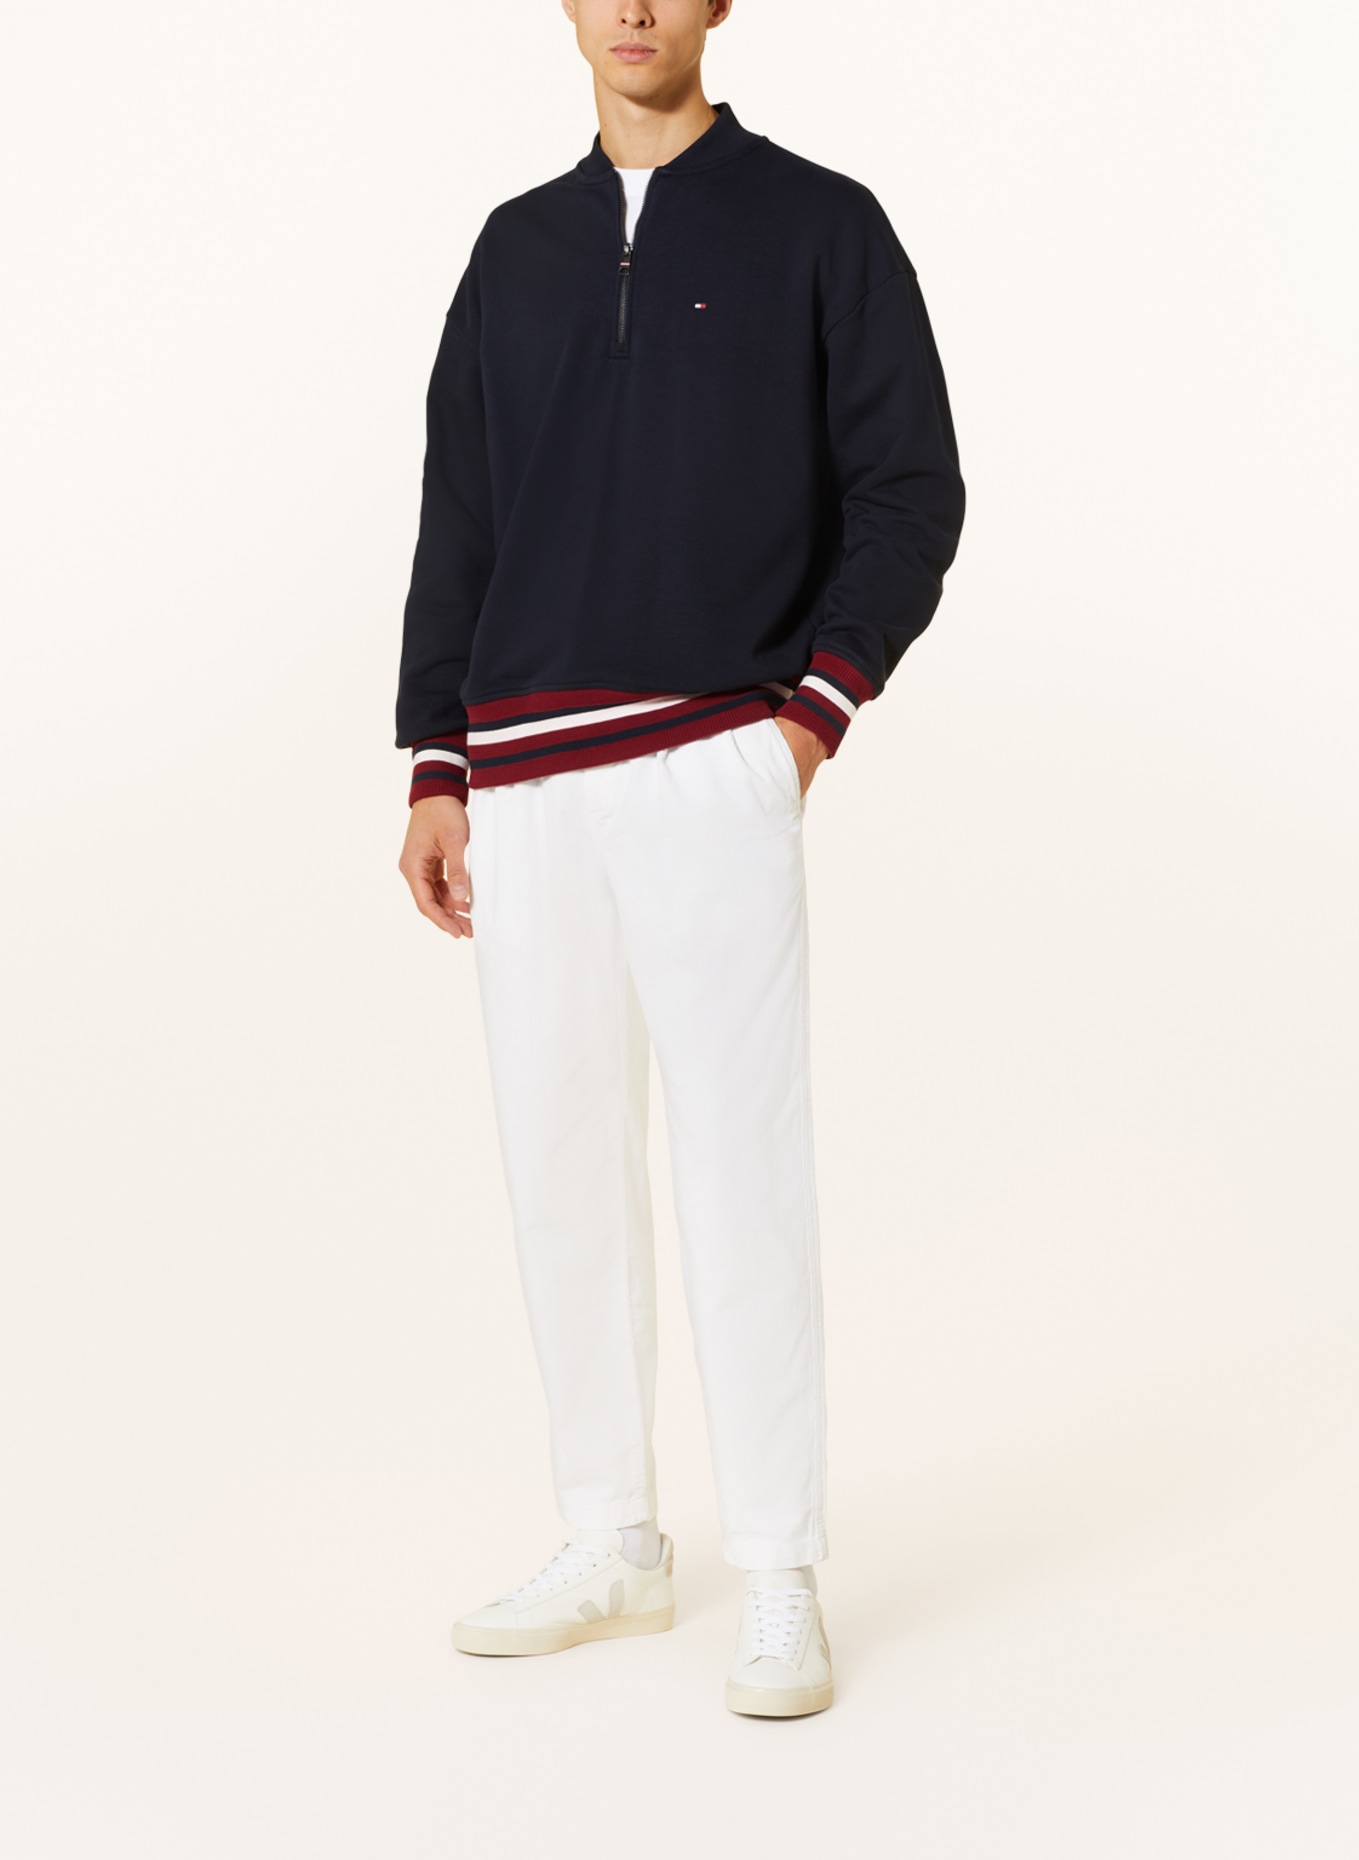 TOMMY HILFIGER Half-zip sweater, Color: DARK BLUE/ DARK RED/ WHITE (Image 2)